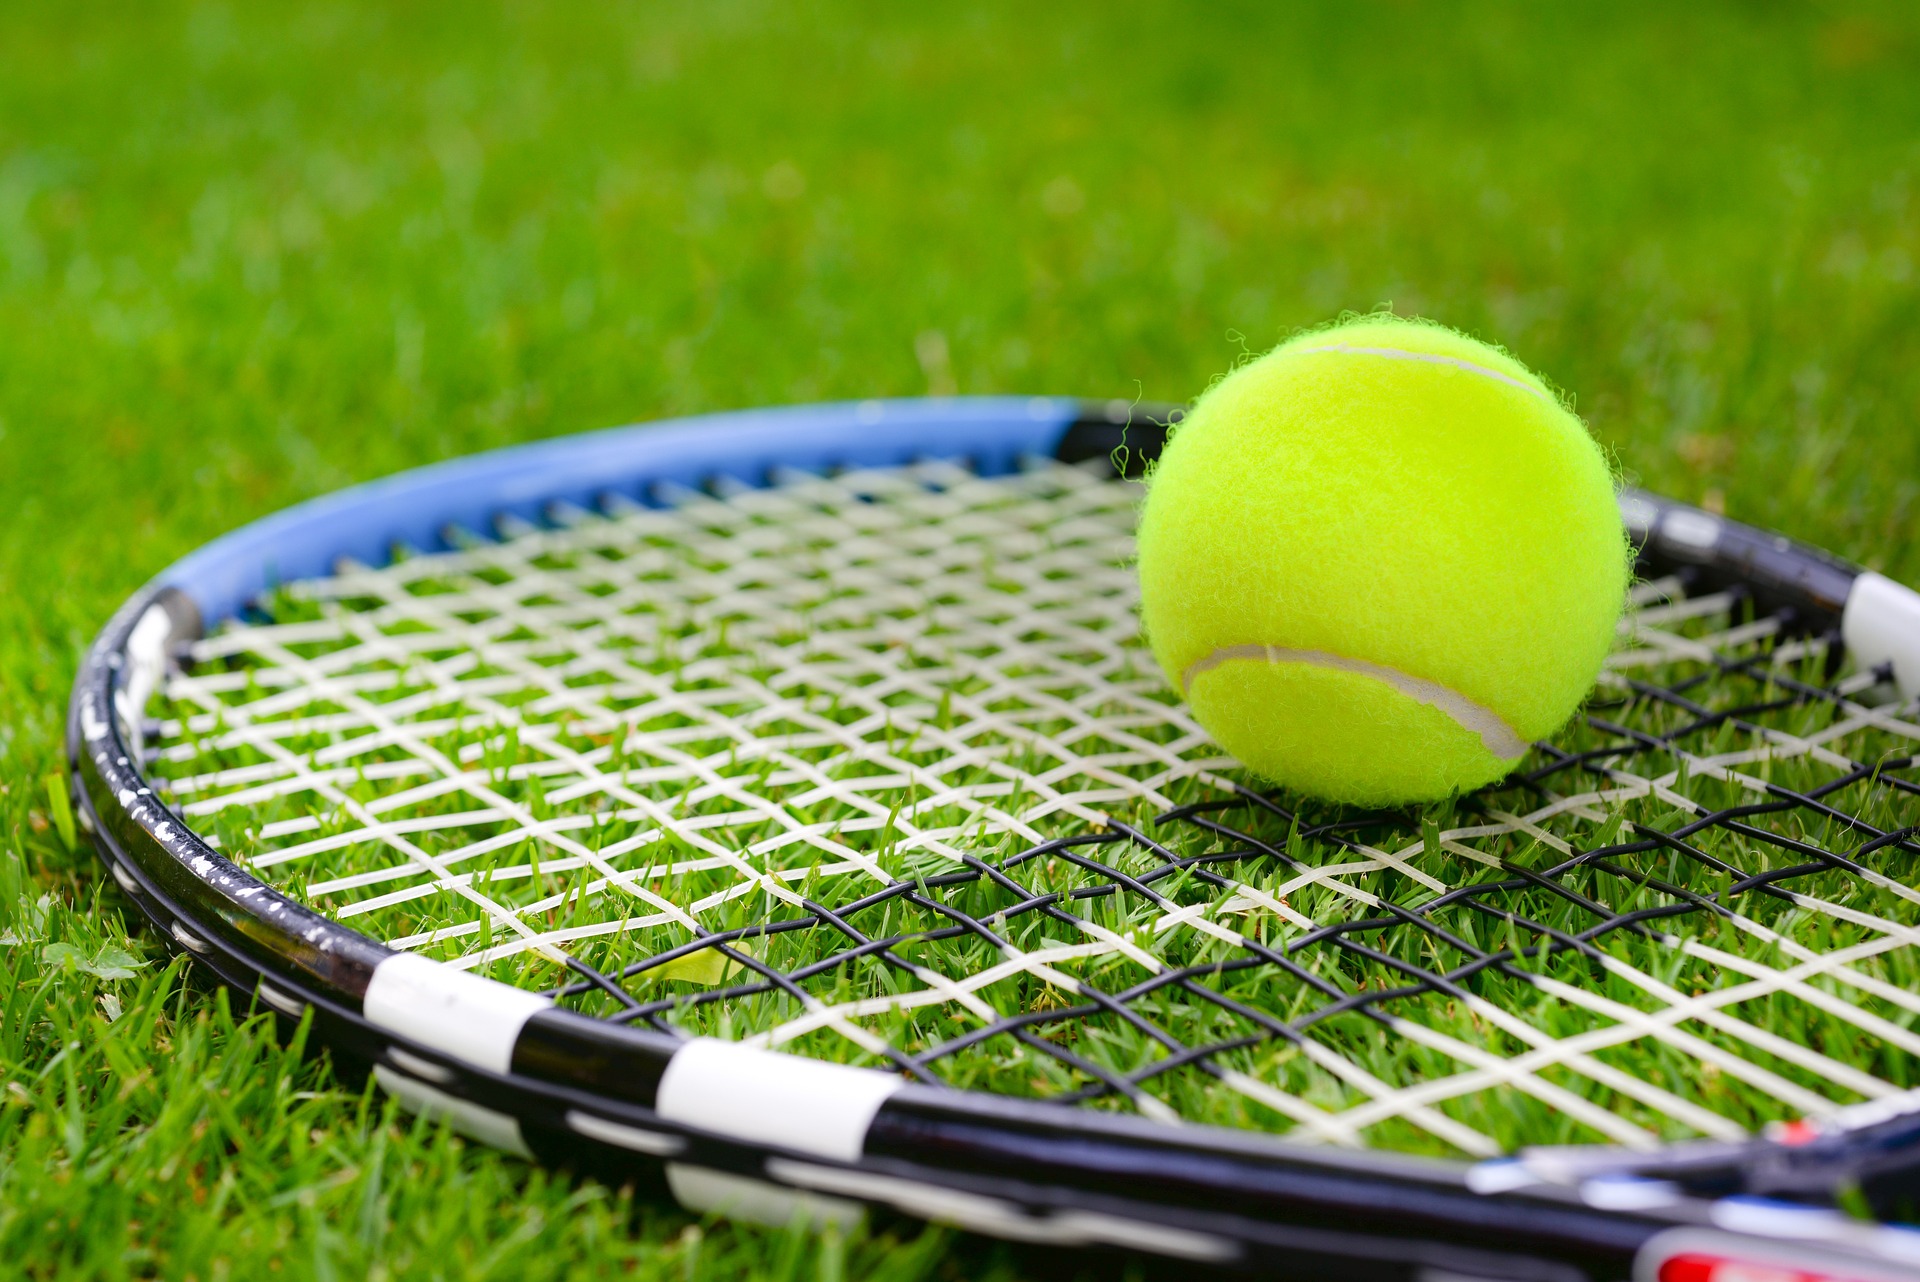 잔디로 된 테니스 코트 사진